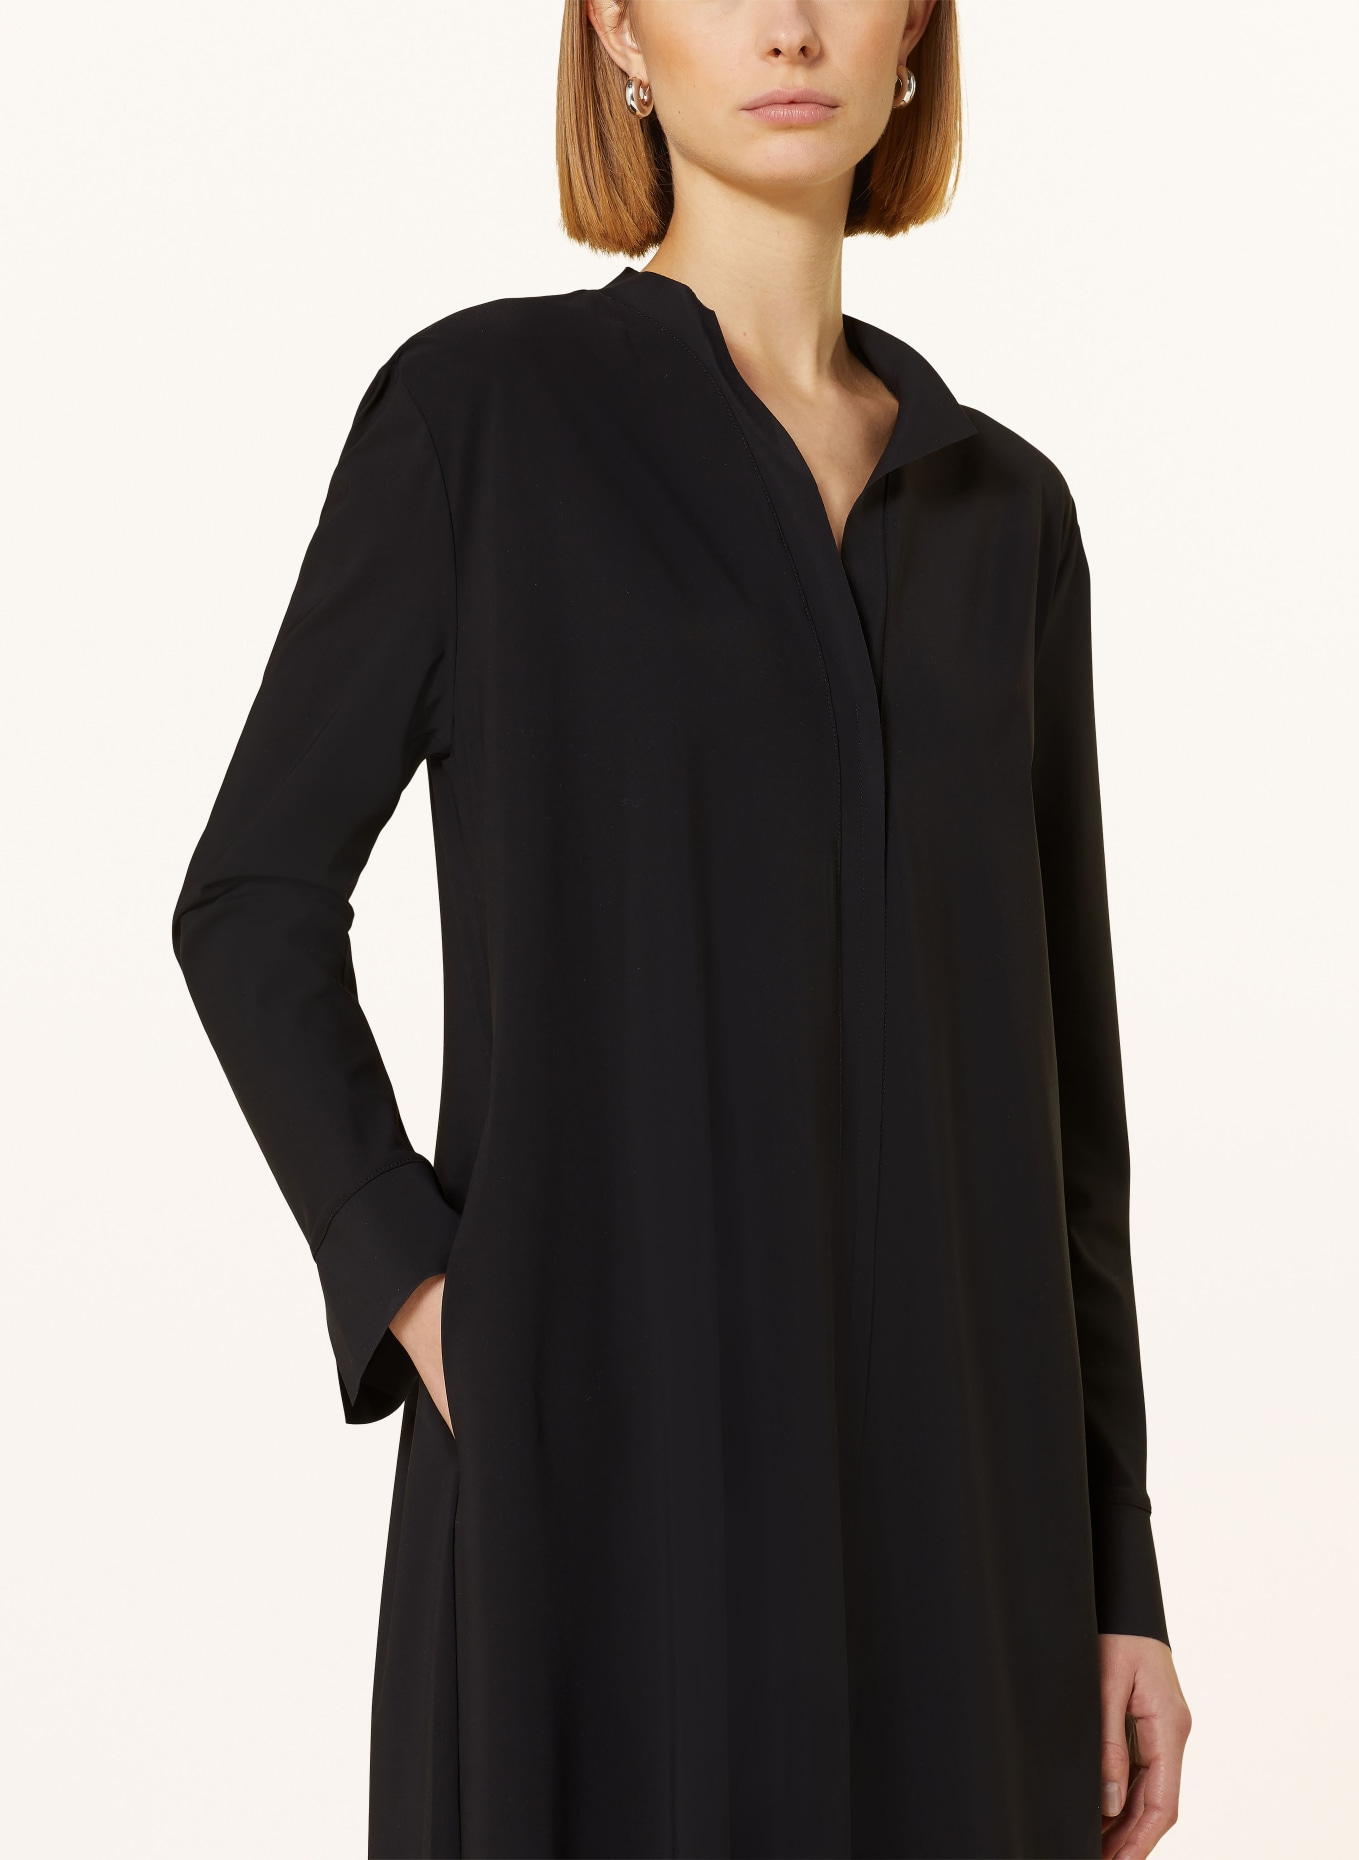 MRS & HUGS Dress, Color: BLACK (Image 4)